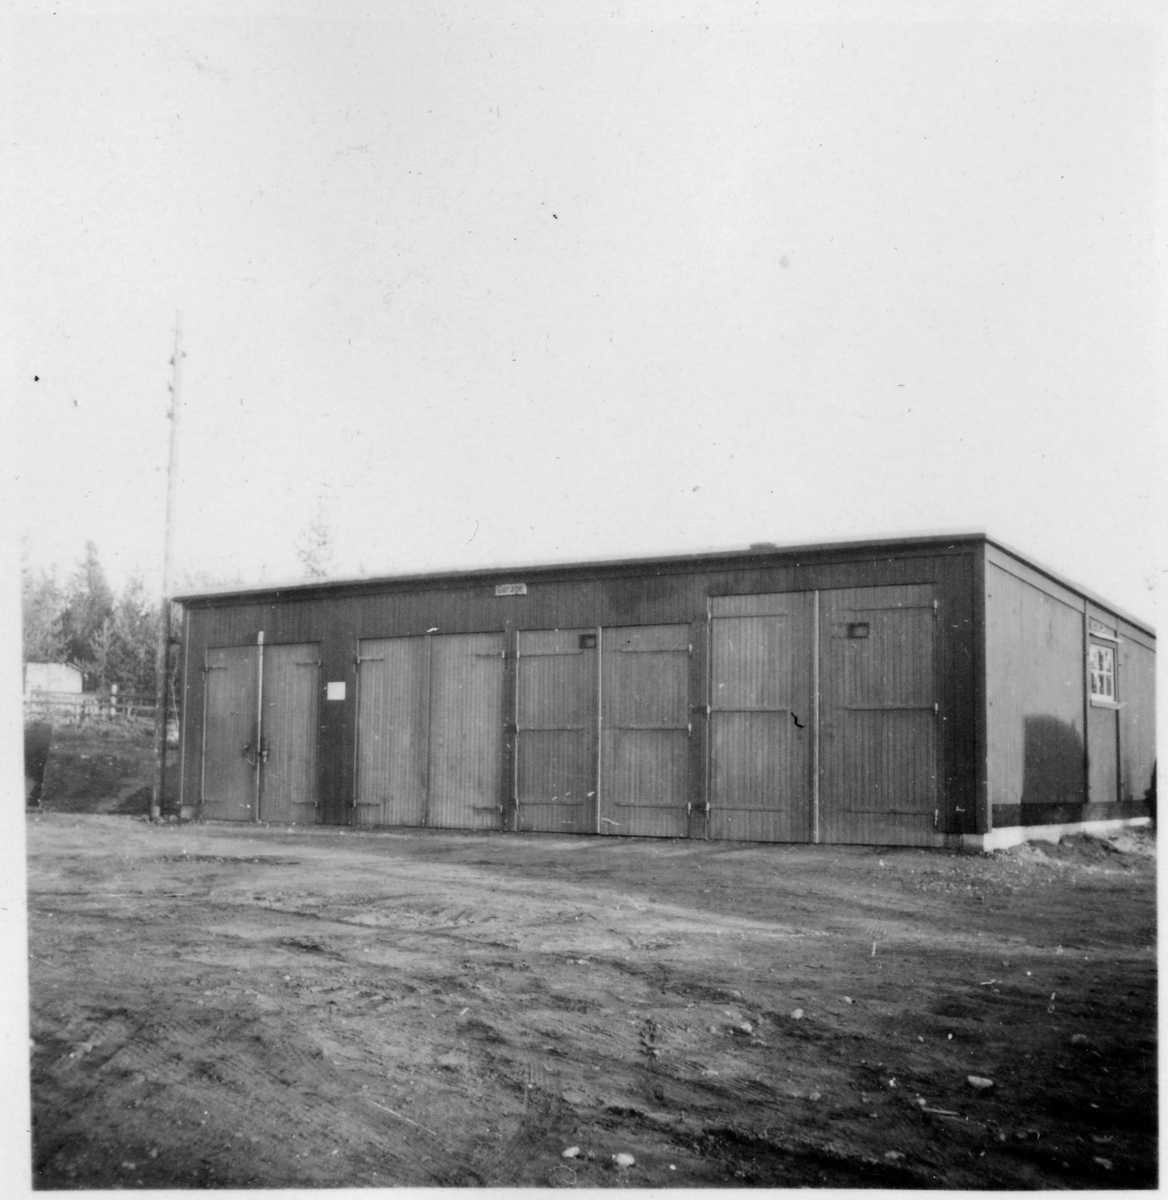 Vägstation BD 15, Gällivare, filial Dokkas. Garagebyggnad. Ovanför garageportarna skylt "Garage".